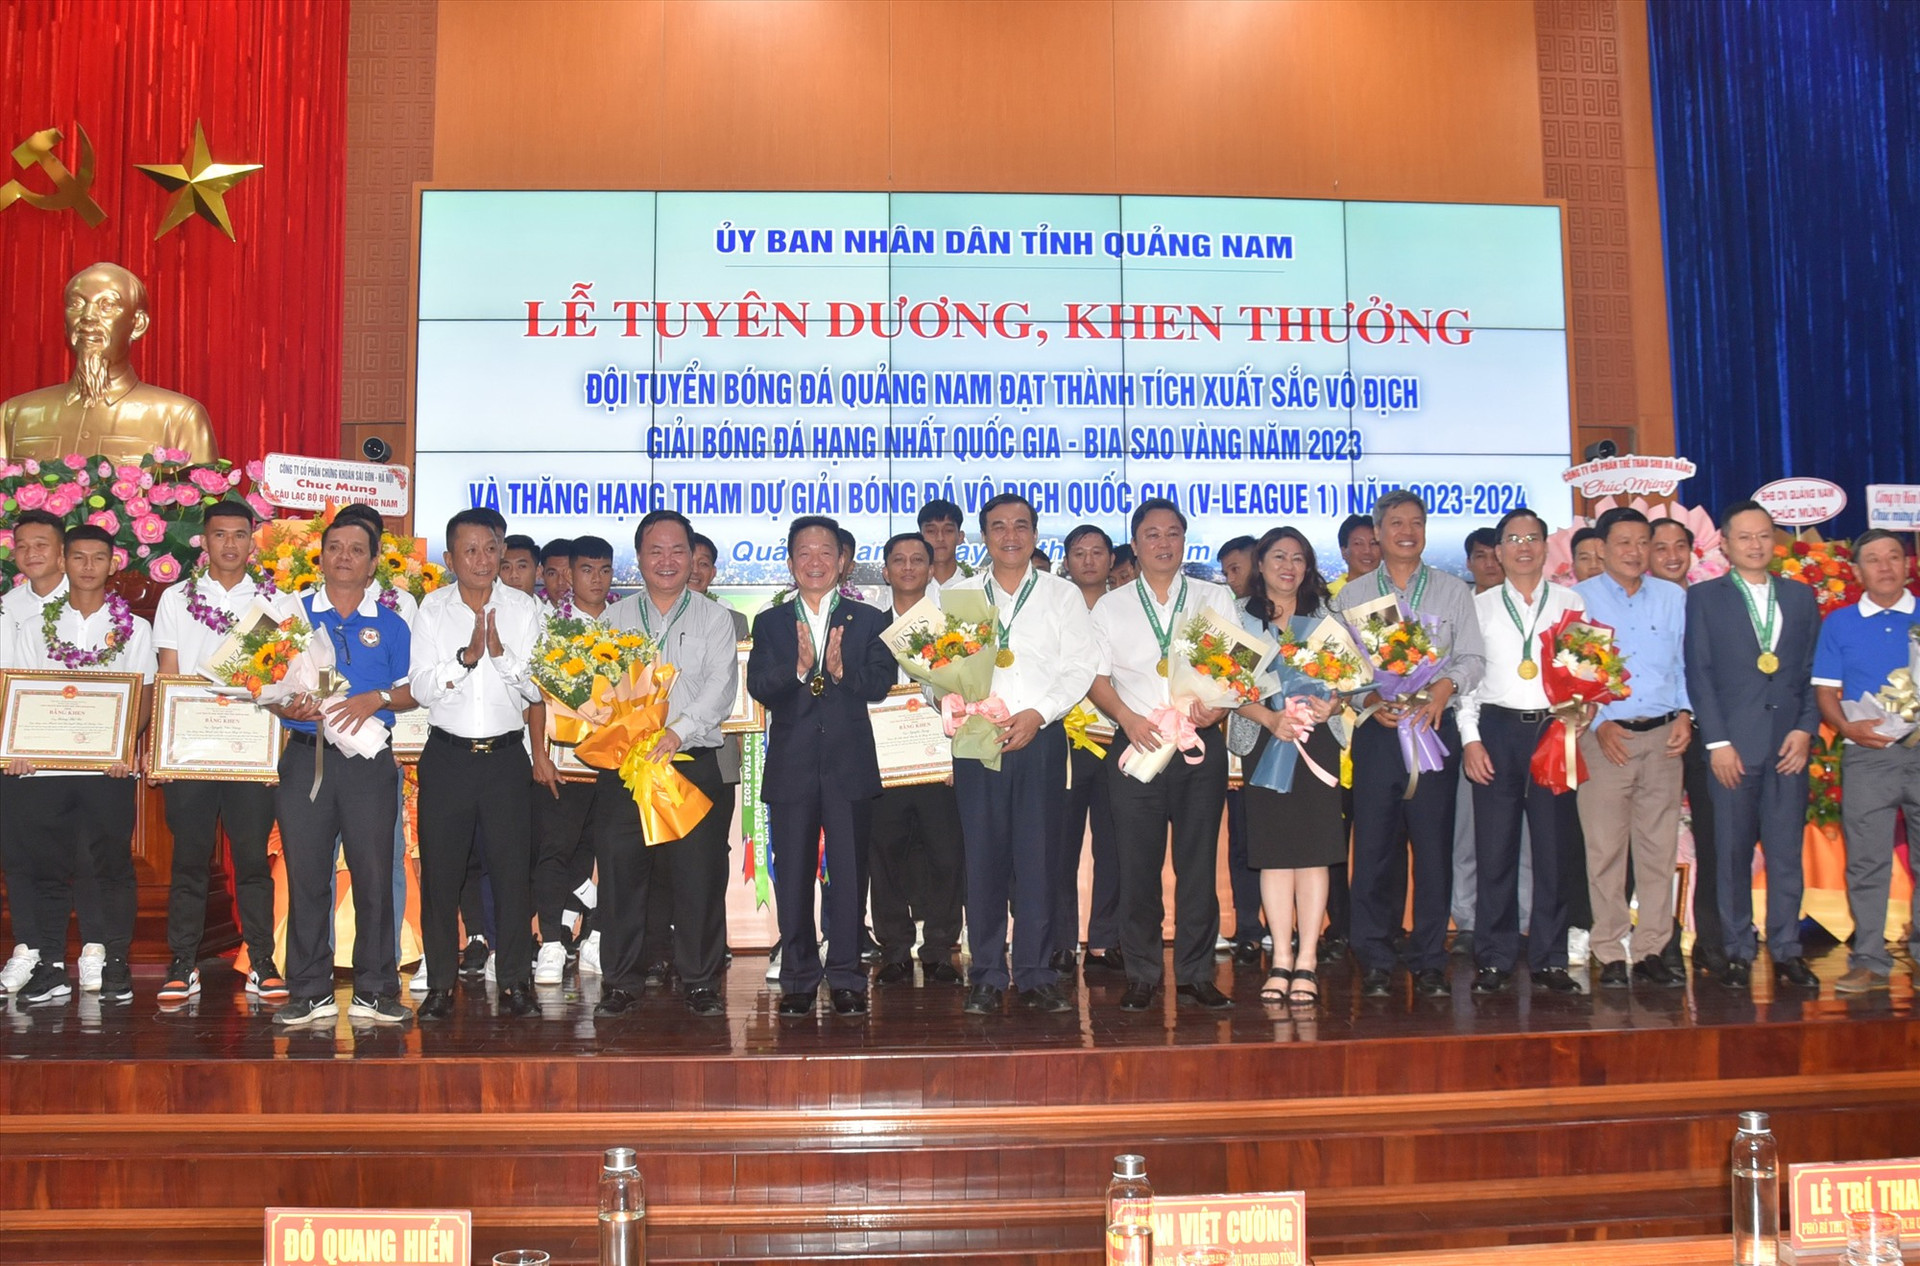 Lễ tuyên dương, khen thưởng đội bóng Quảng Nam do UBND tỉnh tổ chức.Ảnh: A.S